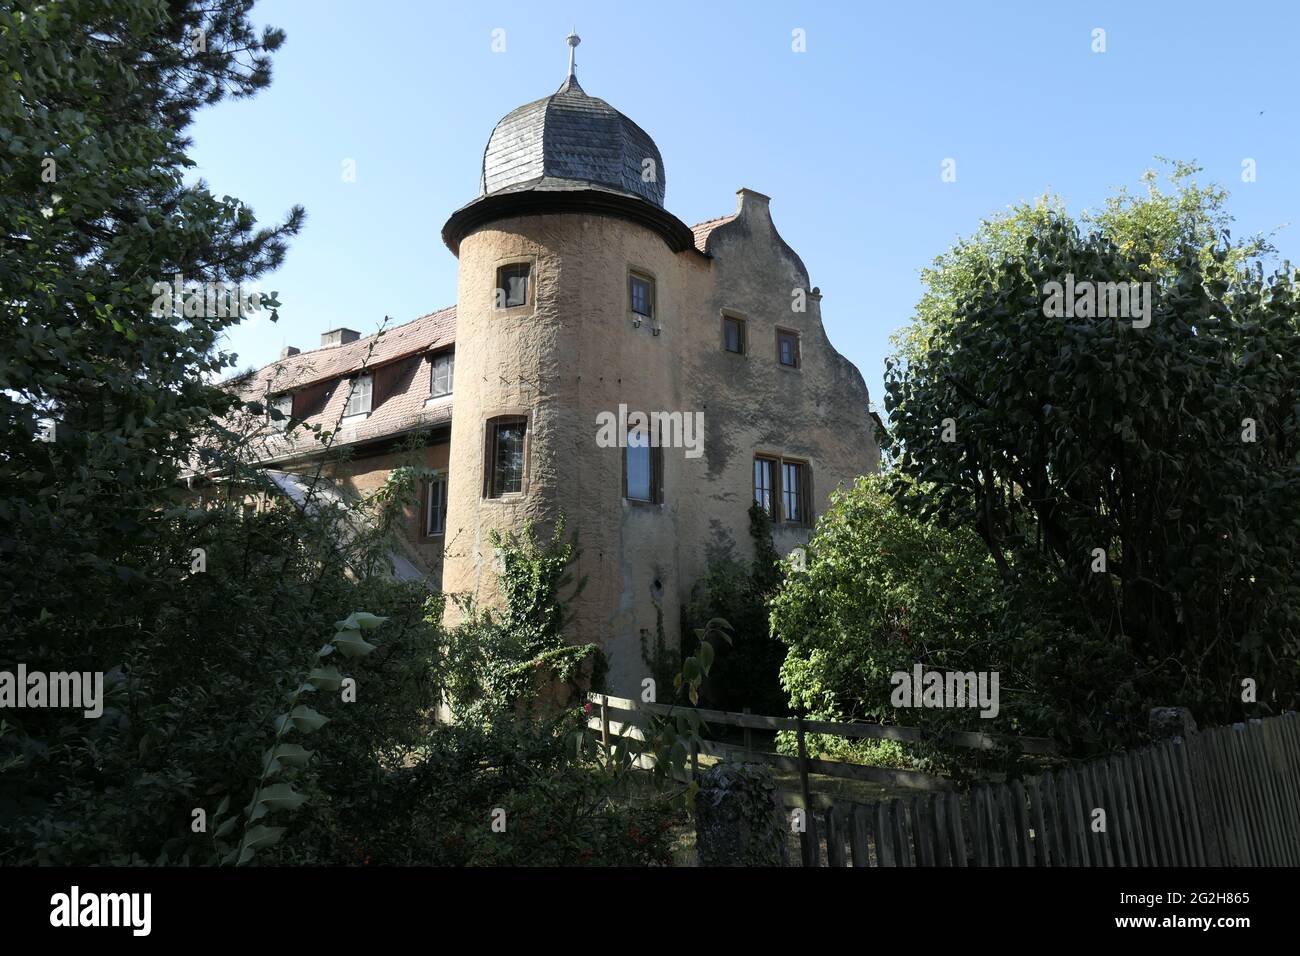 Neuses am Sand Castle, Prichsenstadt, Franconie, Bavière, Allemagne Banque D'Images